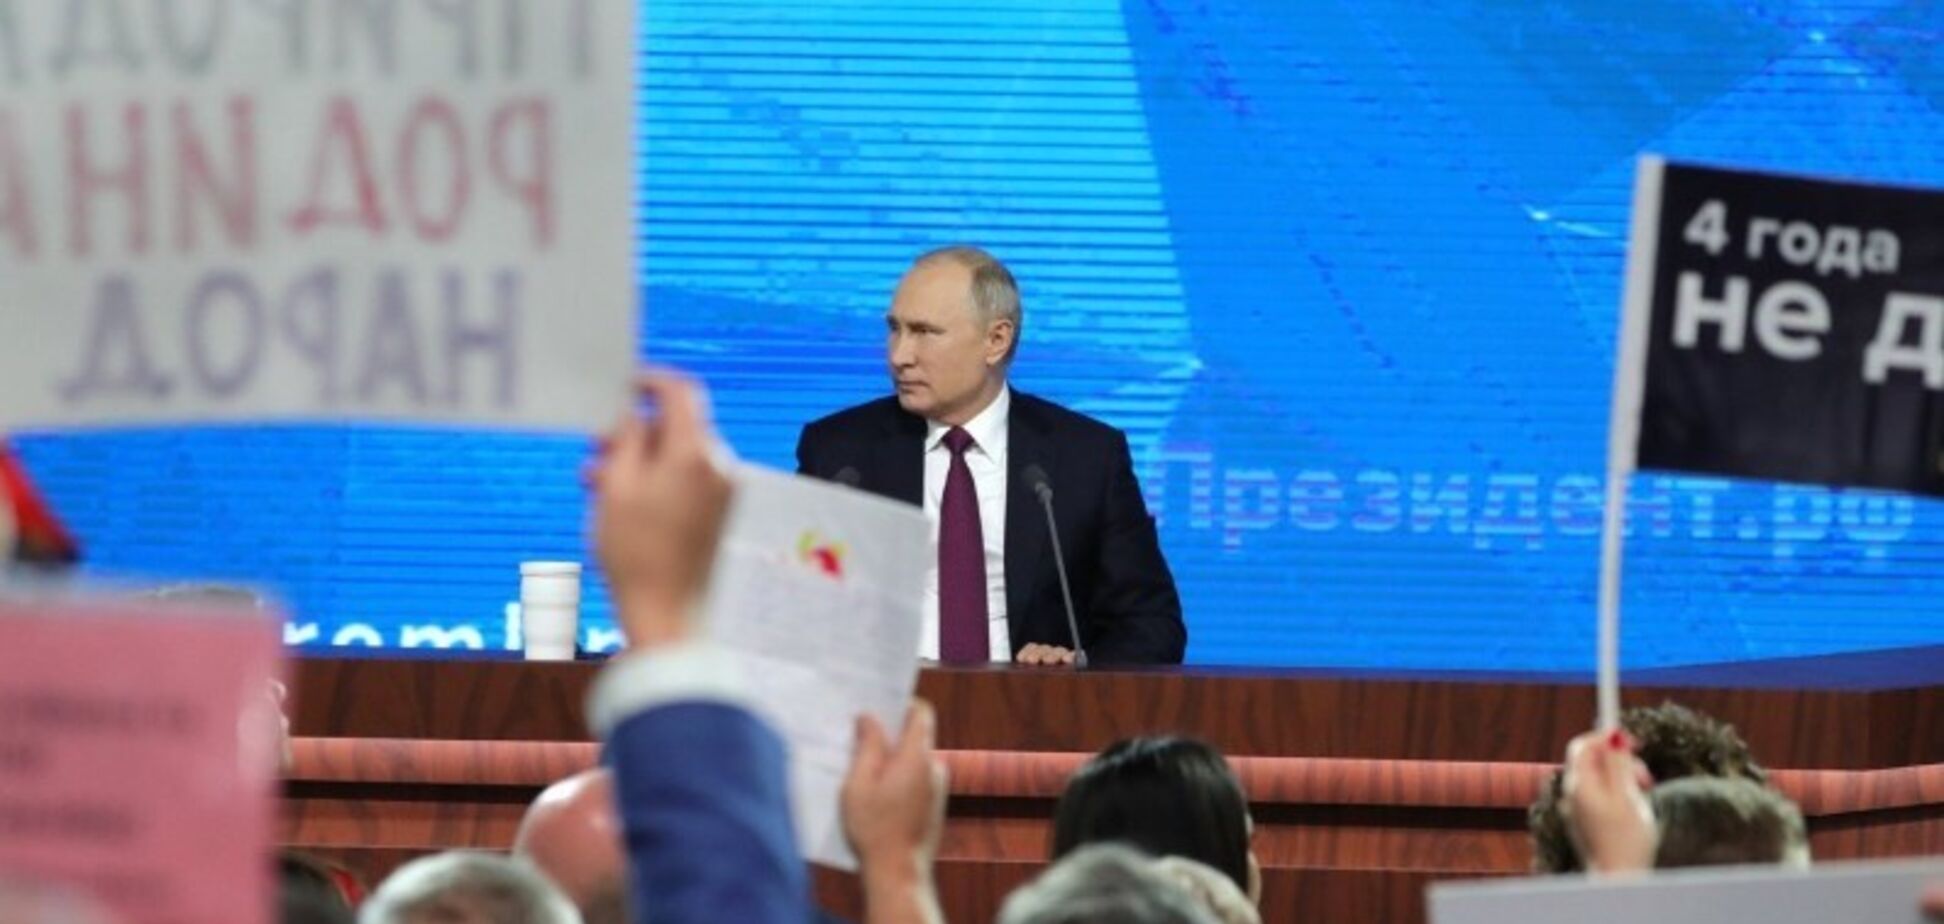 Правитиме і далі: у Росії можуть змінити Конституцію заради Путіна